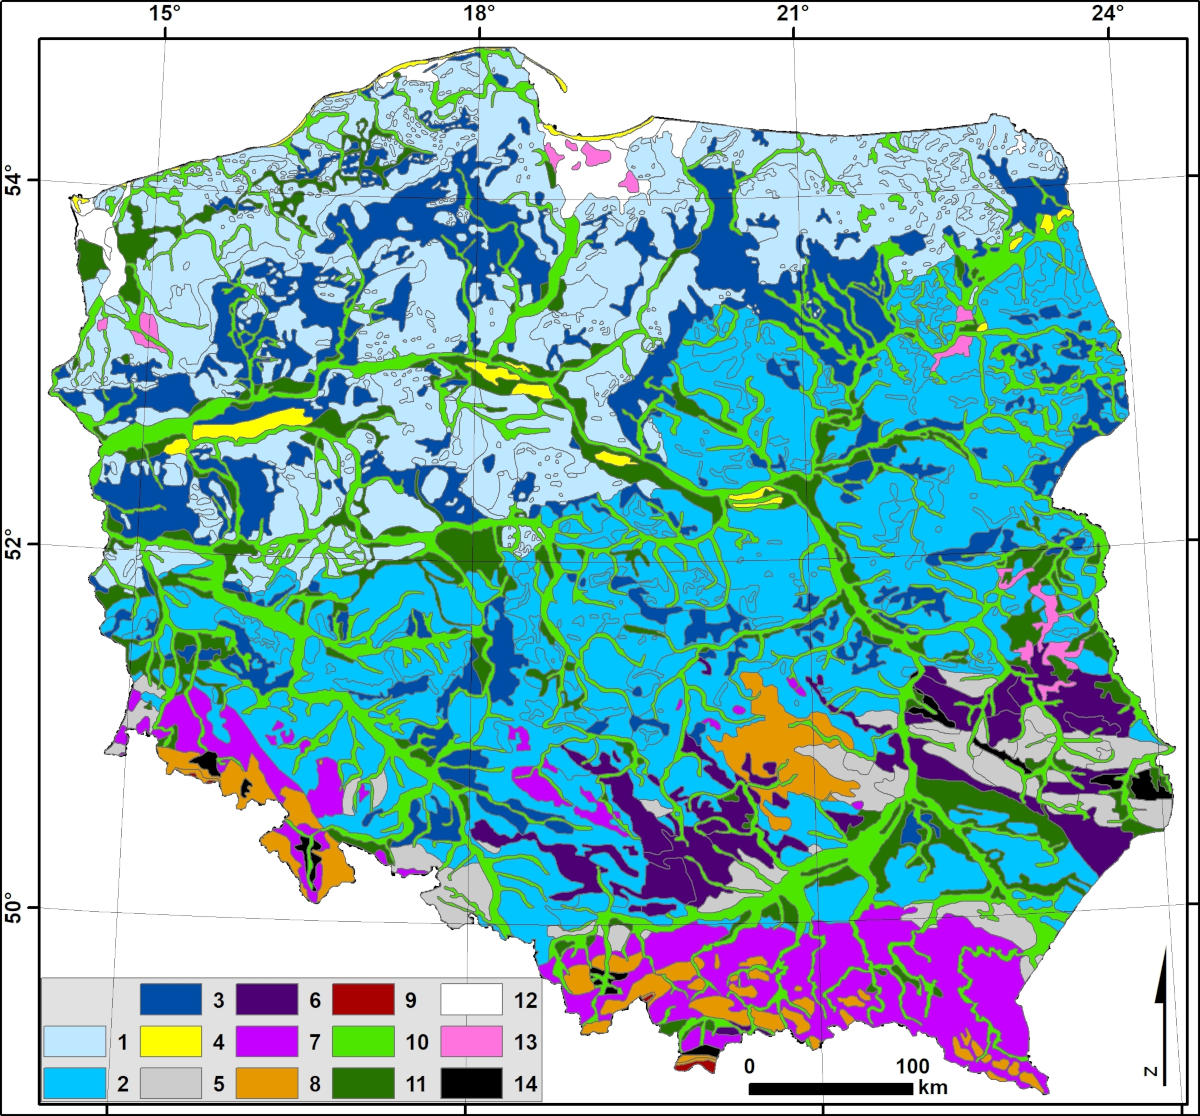 Rodzaje krajobrazów naturalnych w Polsce. Opracowanie własne na podstawie: Richling (2005), zmodyfikowane. Krajobrazy nizin: 1 – glacjalne; 2 – peryglacjalne; 3 – fluwioglacjalne; 4 – eoliczne; Krajobrazy wyżyn i gór niskich: 5 – lessowe - eoliczne; 6 – węglanowe i gipsowe - erozyjne; 7 – krzemianowe i glinokrzemianowe - erozyjne; Krajobrazy gór średnich i wysokich: 8 – gór średnich - erozyjne; 9 – wysokogórskie - erozyjne i glacjalne; Krajobrazy dolin i obniżeń: 10 – zalewowych den dolin - akumulacyjne; 11 – teras nadzalewowych - akumulacyjne; 12 – deltowe - akumulacyjne; 13 – równin bagiennych – akumulacyjne; 14 – obniżeń denudacyjnych i kotlin w terenach wyżynnych i górskich - erozyjne.